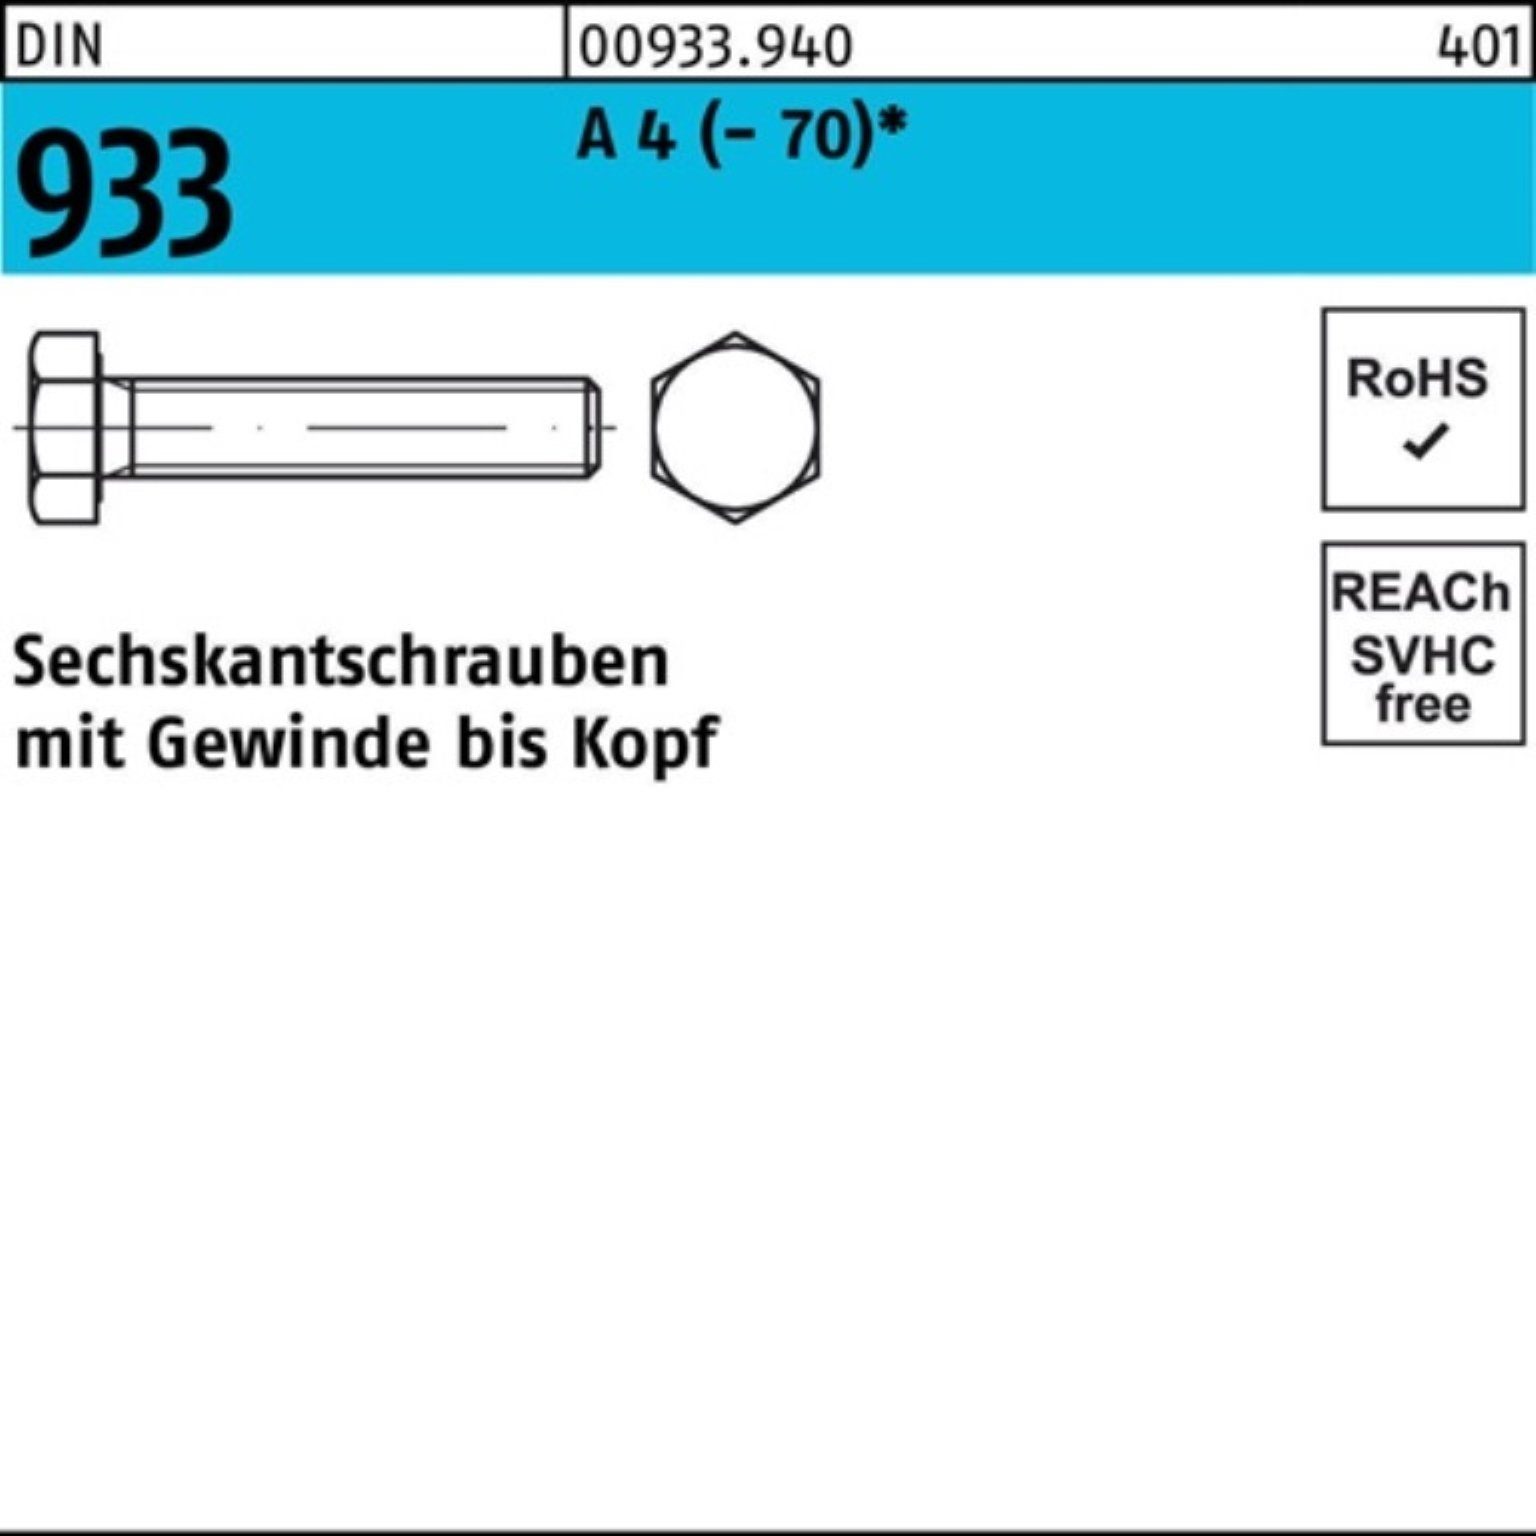 M20x DIN 100er 90 1 933 Sechskantschraube DI Pack 4 (70) A VG Stück Sechskantschraube Reyher